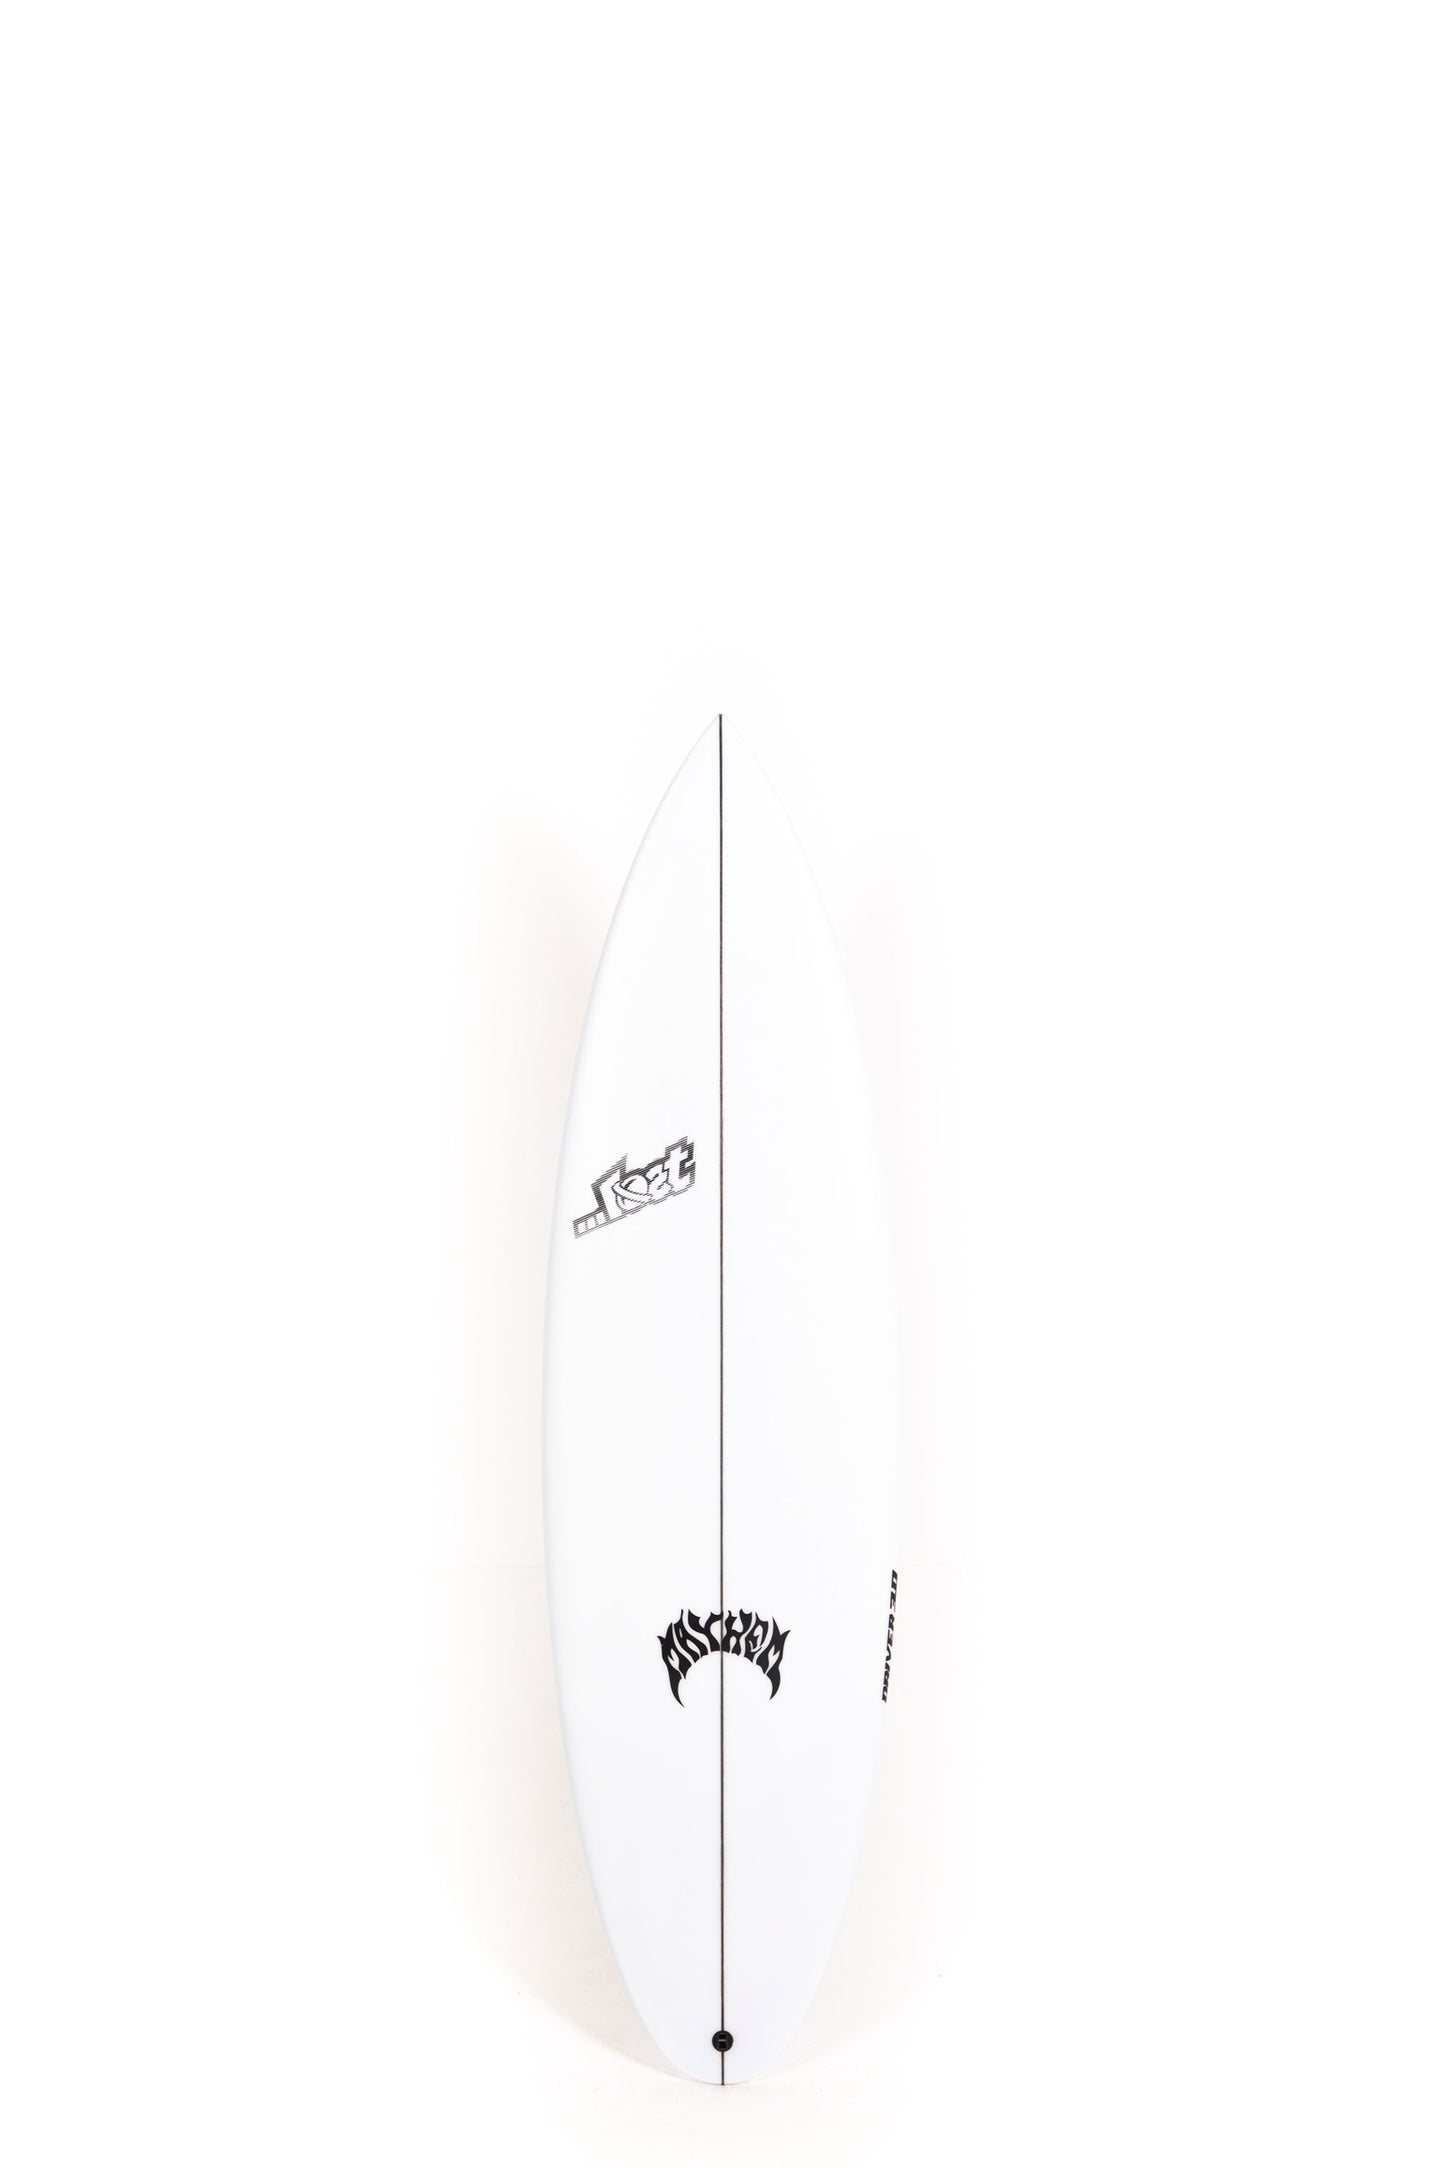 Pukas-Surf-Shop-Lost-Surfboards-driver_3-0-Matt-Biolos-5_9